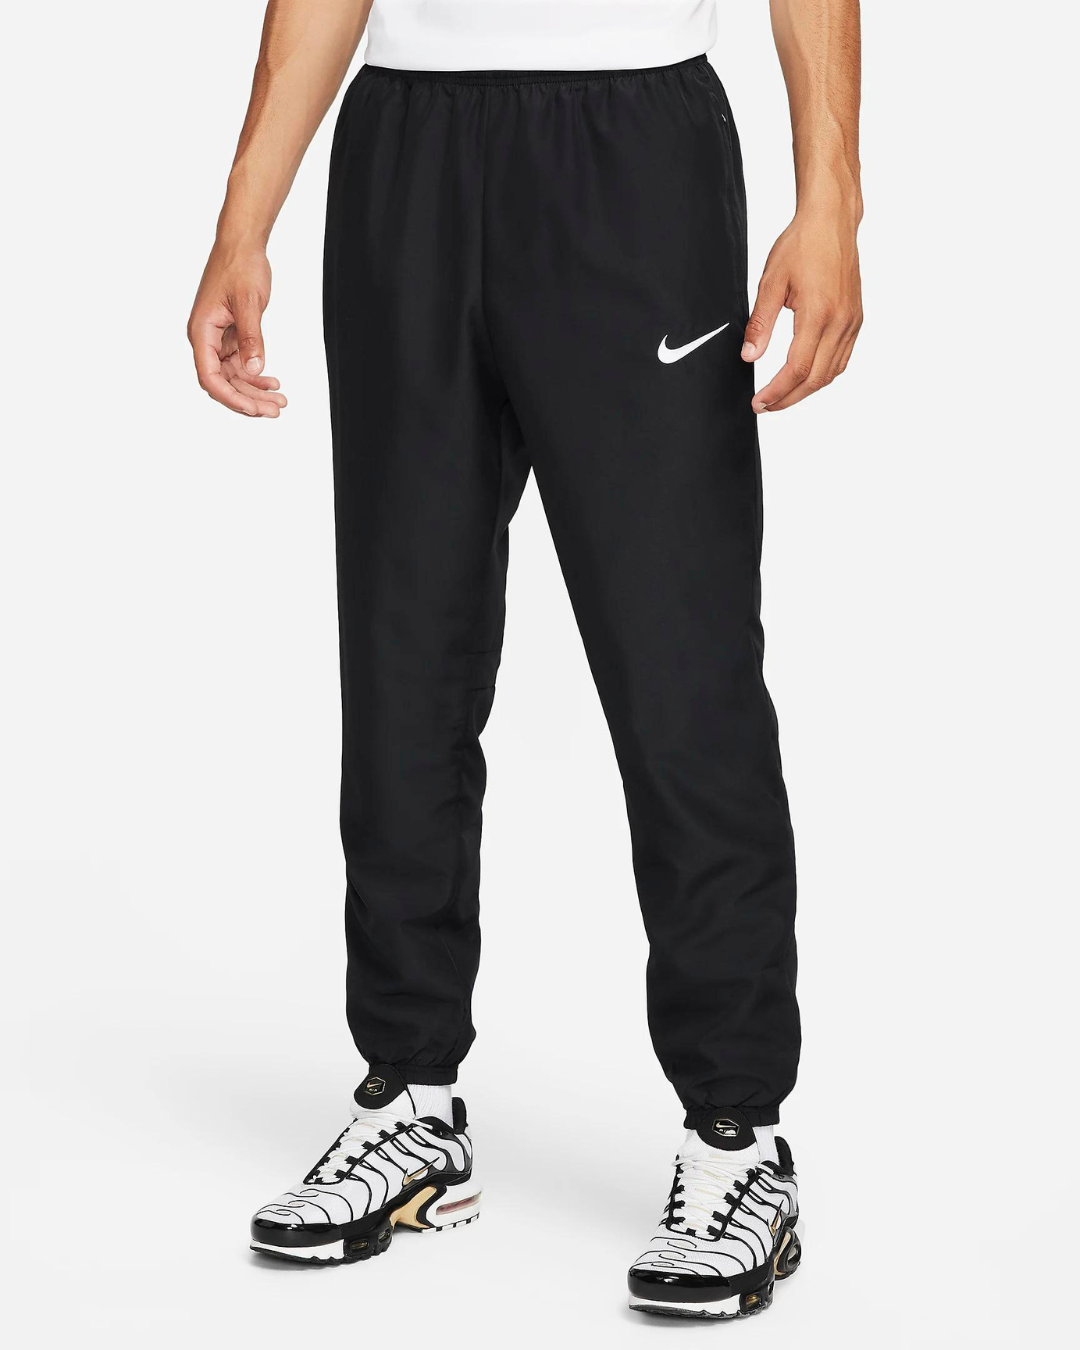 Pantalon Nike Academy Dri-Fit - Noir